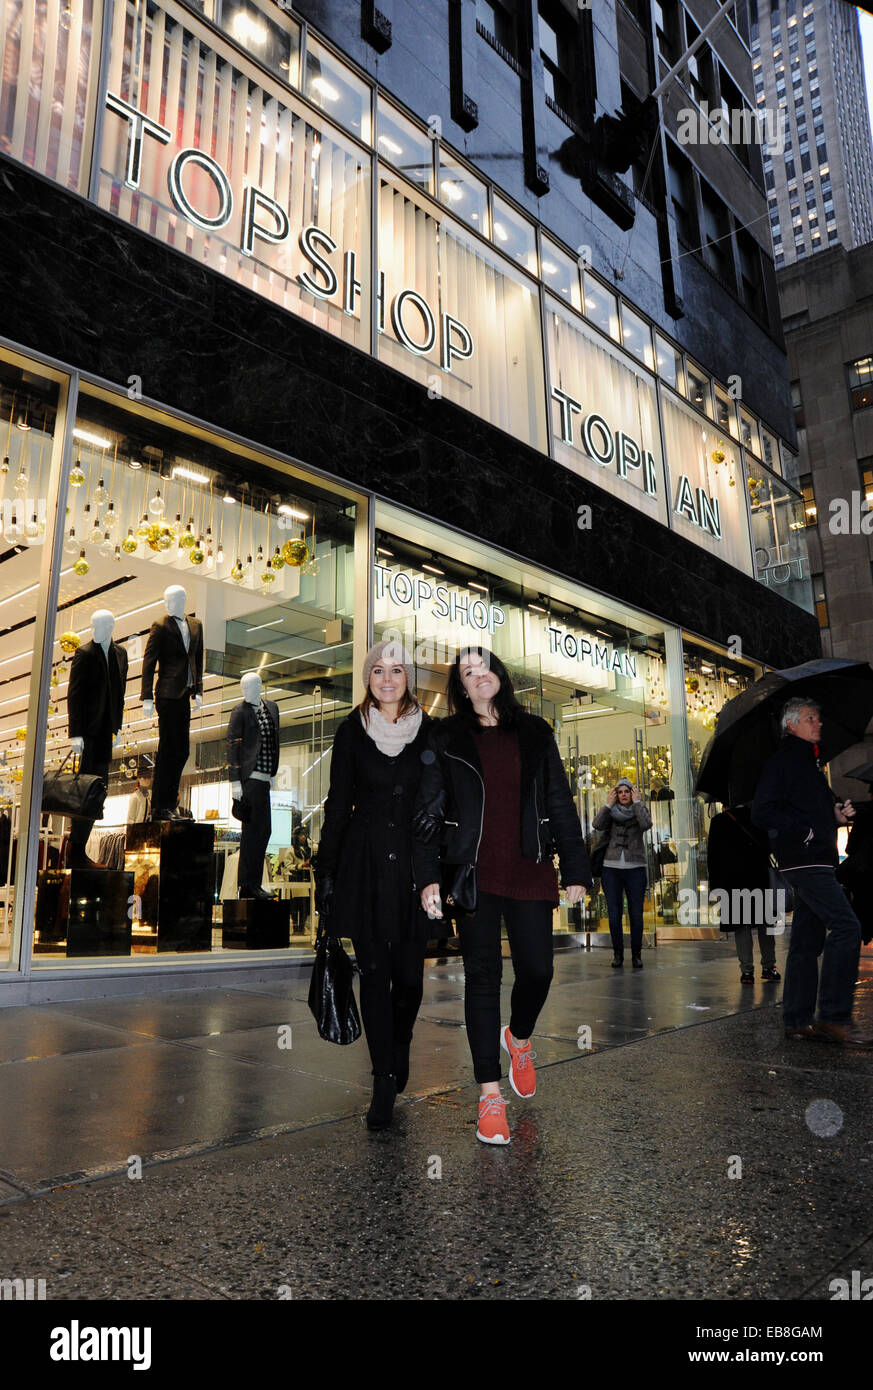 Manhattan New York USA Novembre 2014 - Deux jeunes femmes à l'extérieur de l'ouverture d'un Topshop et Topman store dans la Cinquième Avenue Banque D'Images